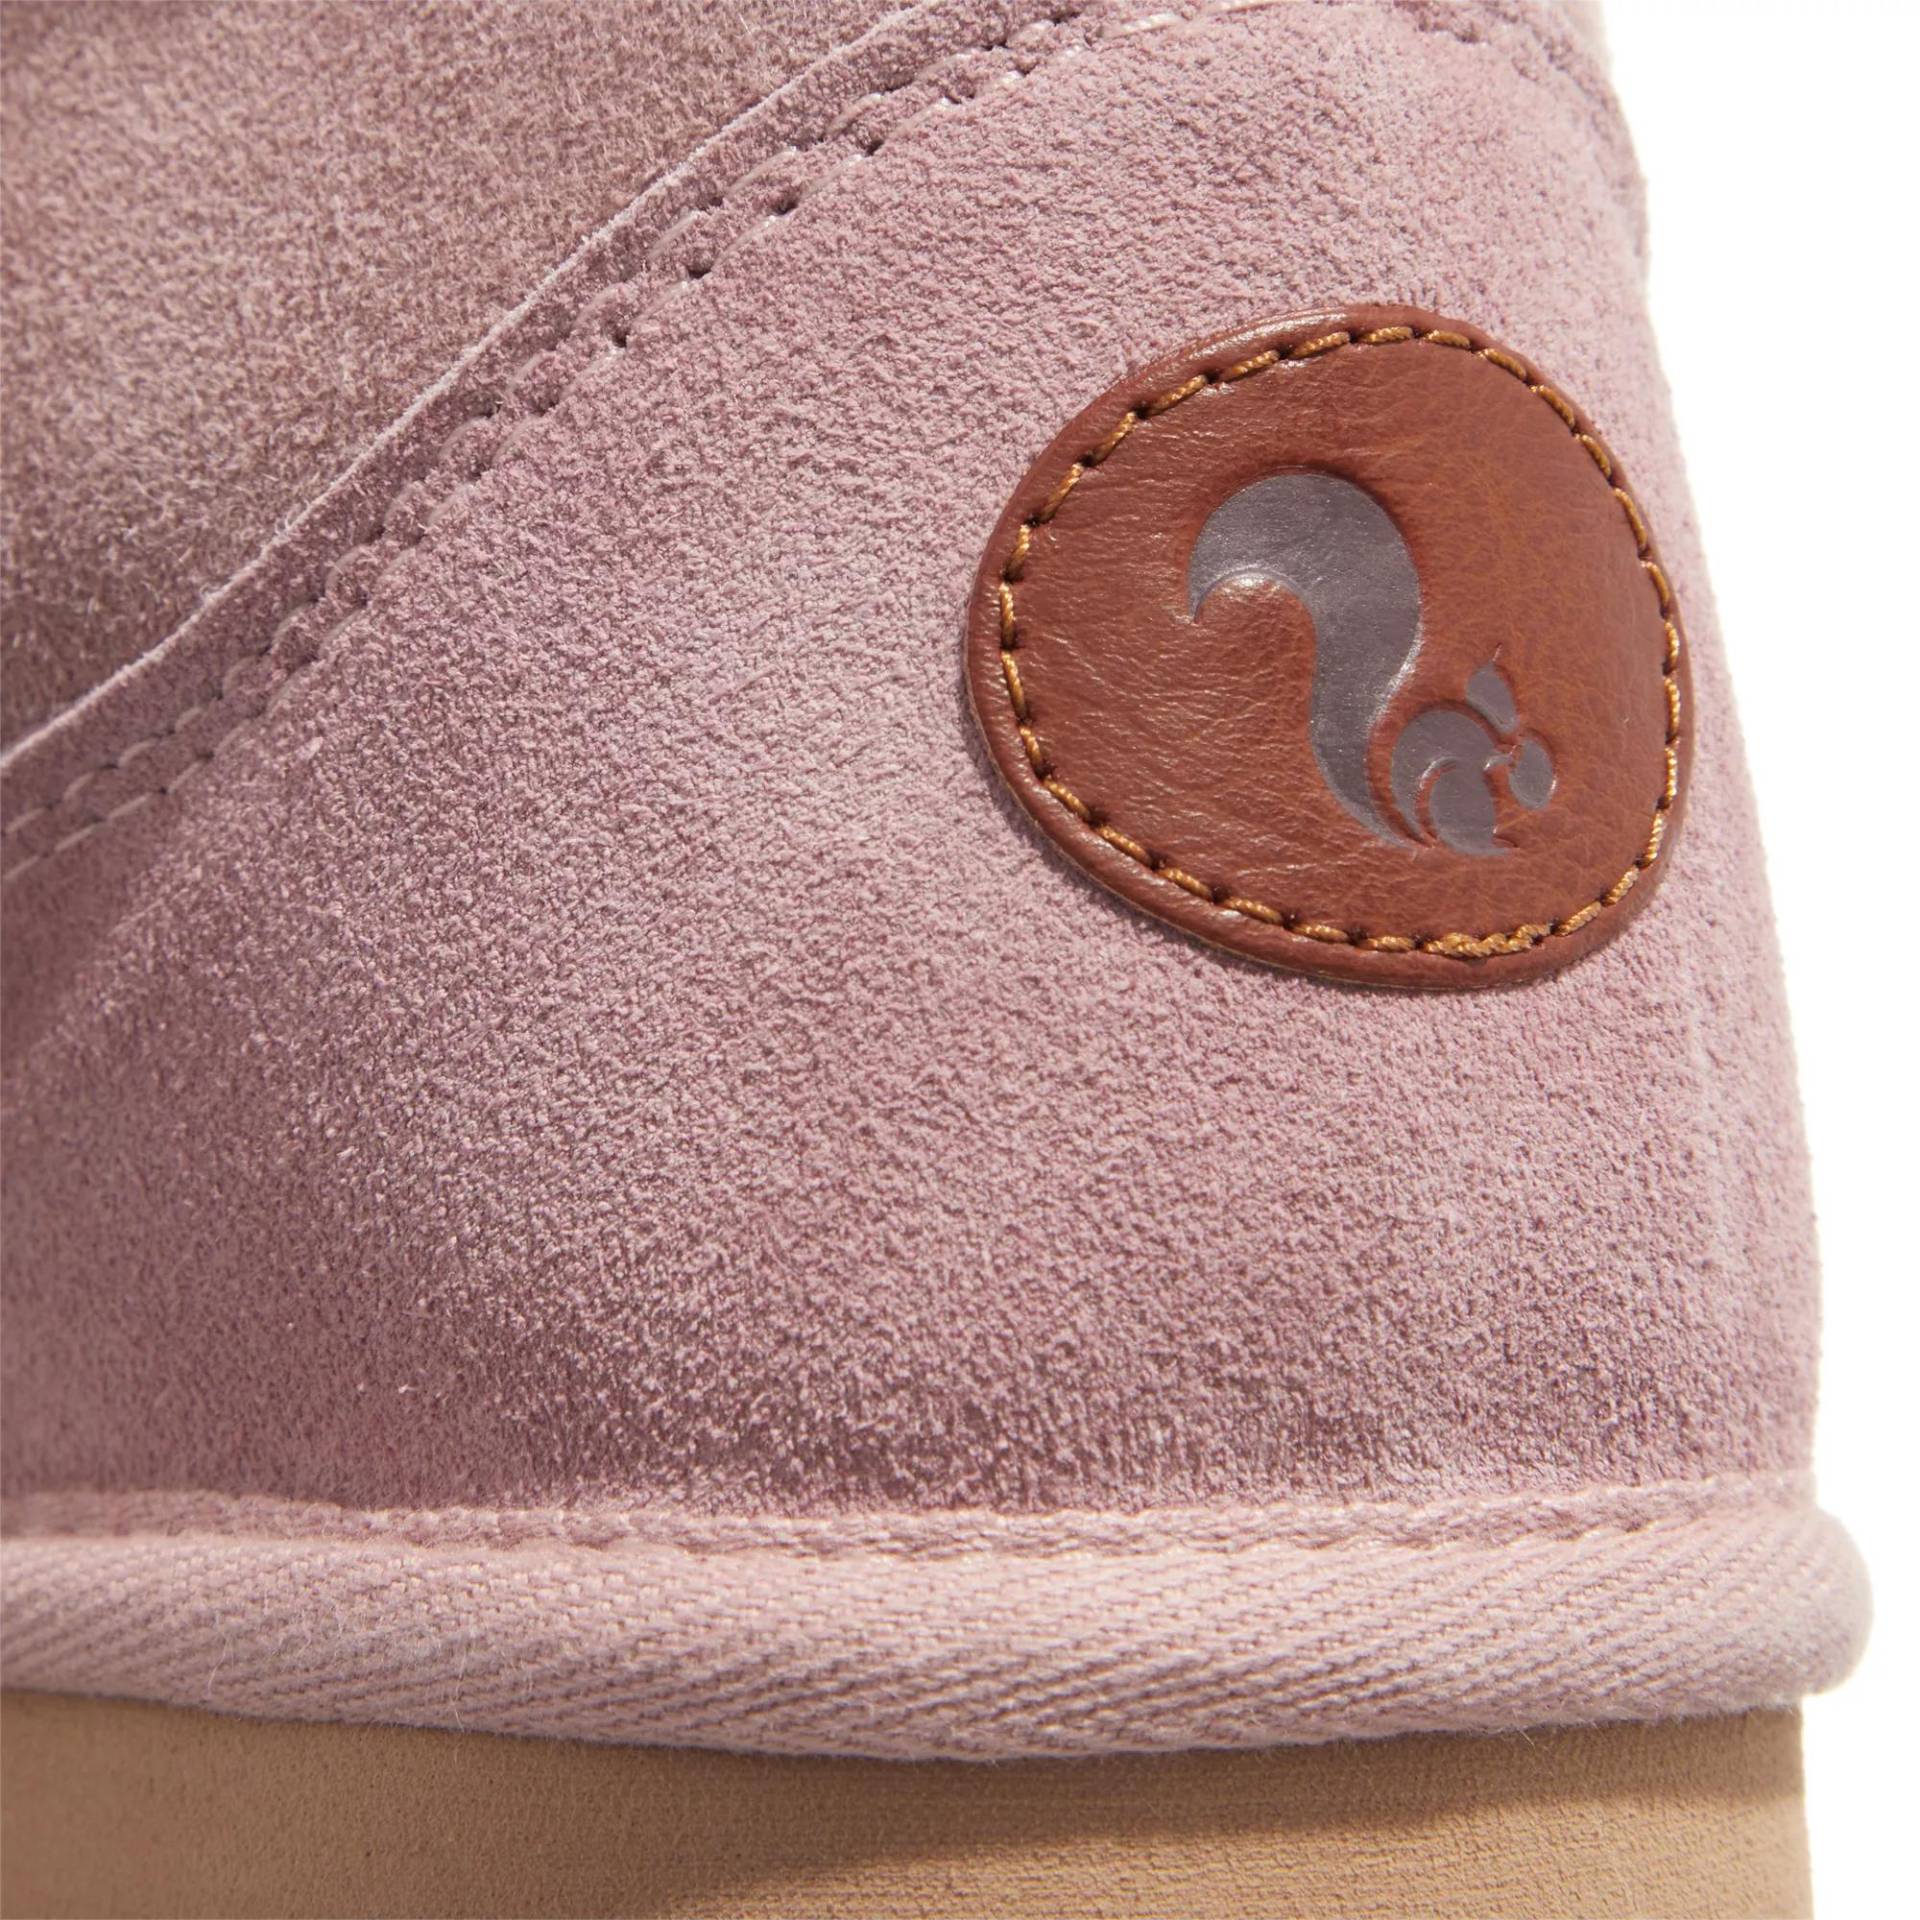 thies Sneakers - thies 1856 ® Mega Shorty new pink (W) - Gr. 41 (EU) - in Gold - für Damen von thies